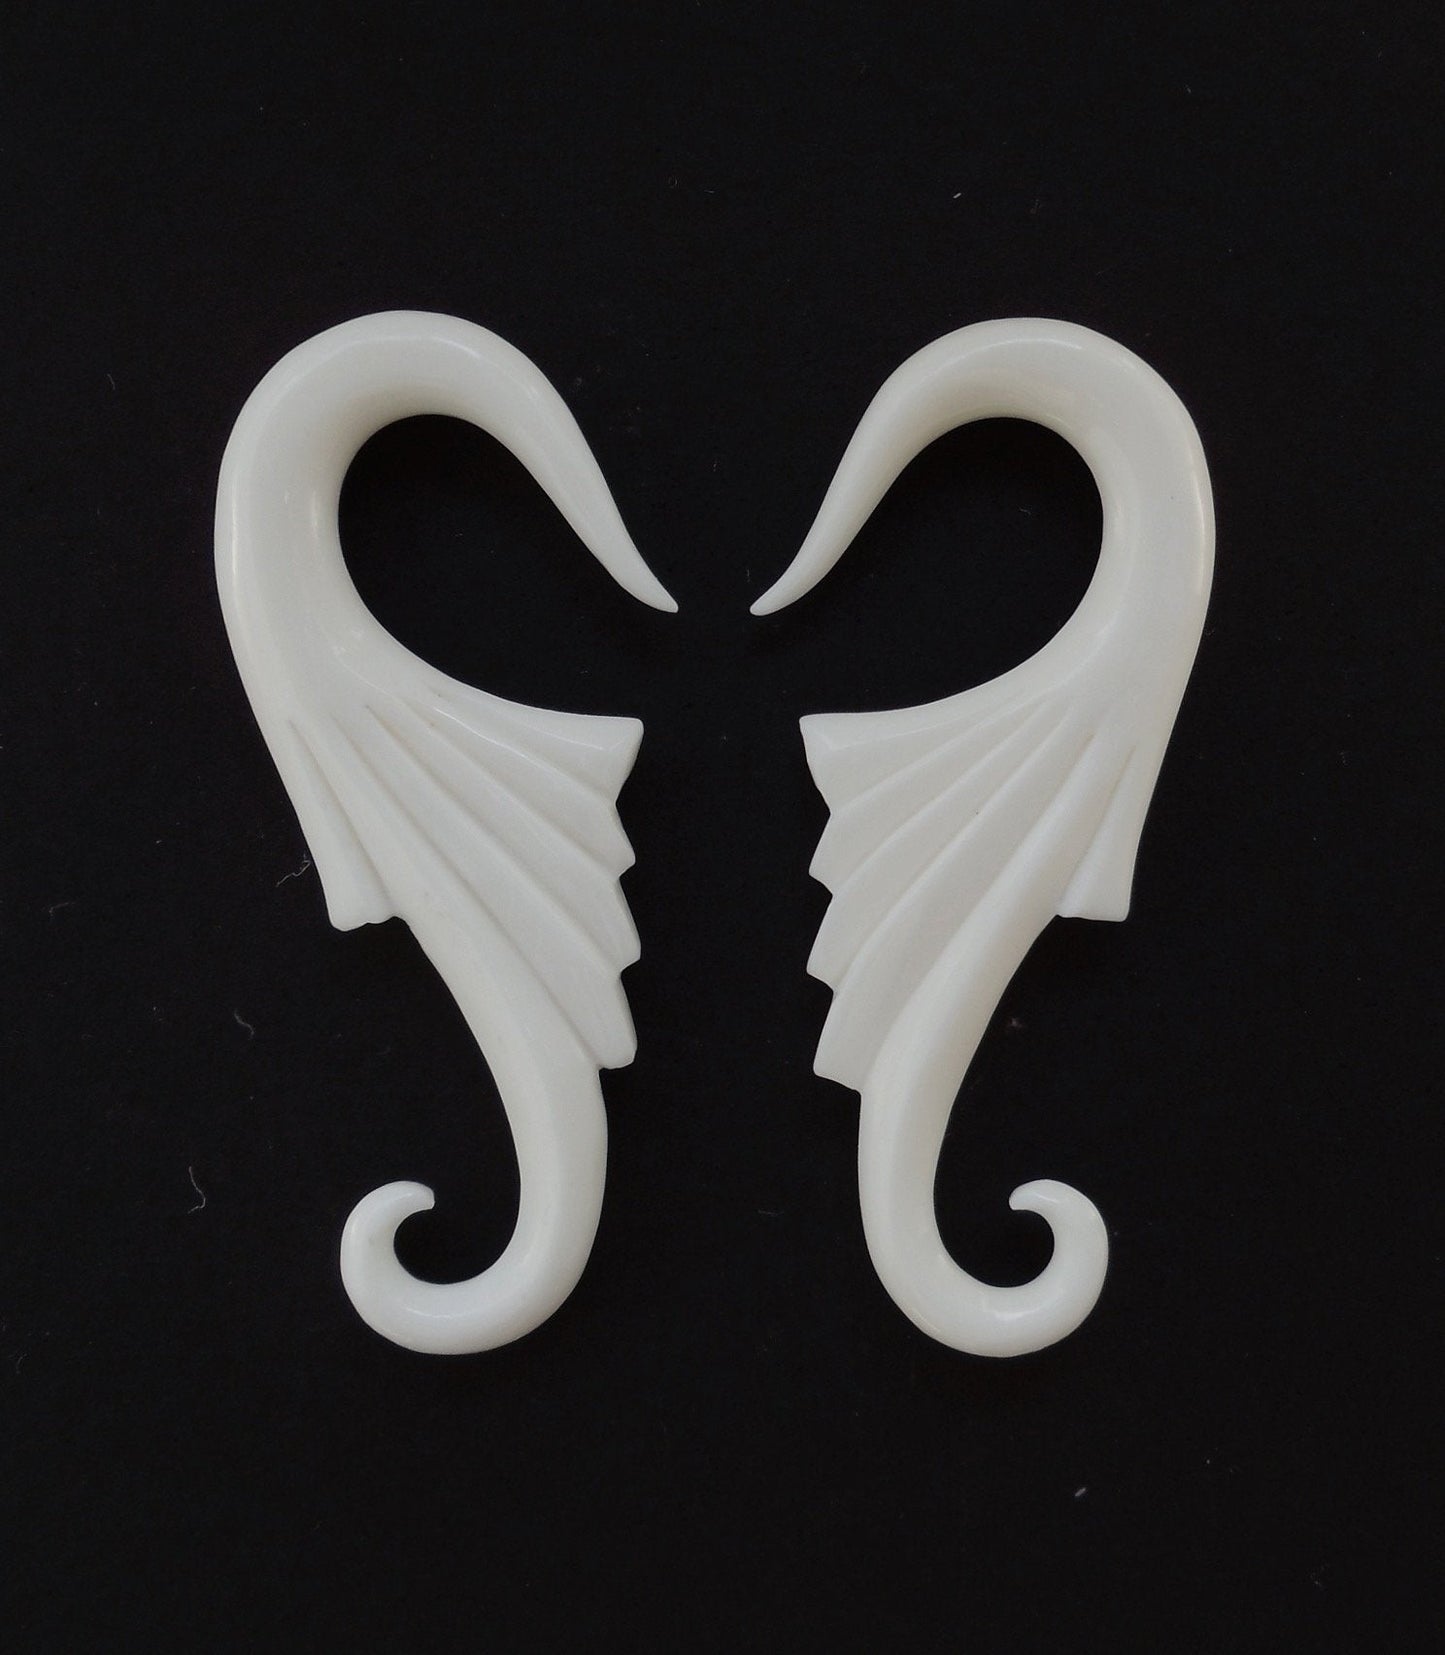 Nuevo Wings, 12 gauge earrings. Organic Bone Body Jewelry